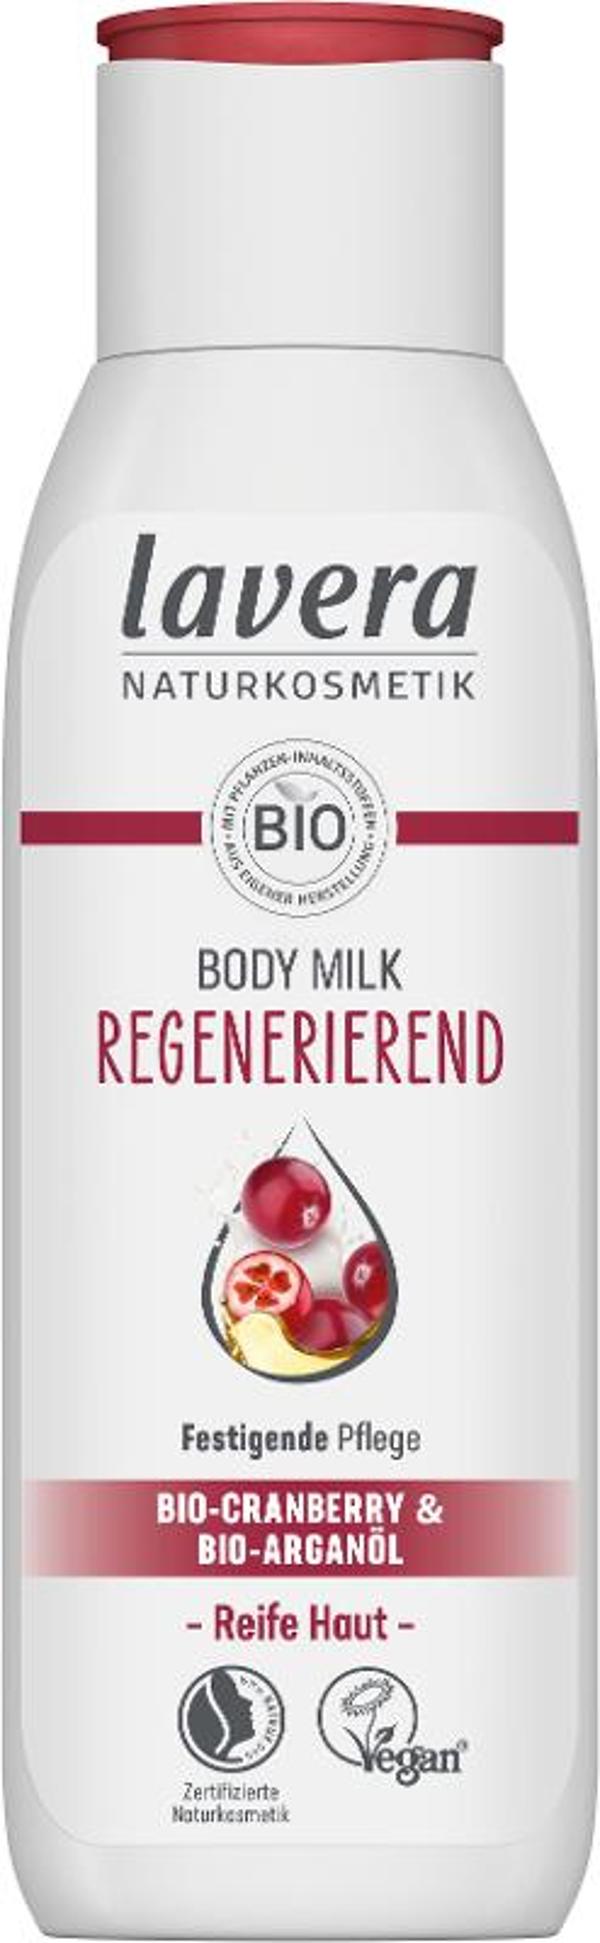 Produktfoto zu Bodymilk Cranberry Argan